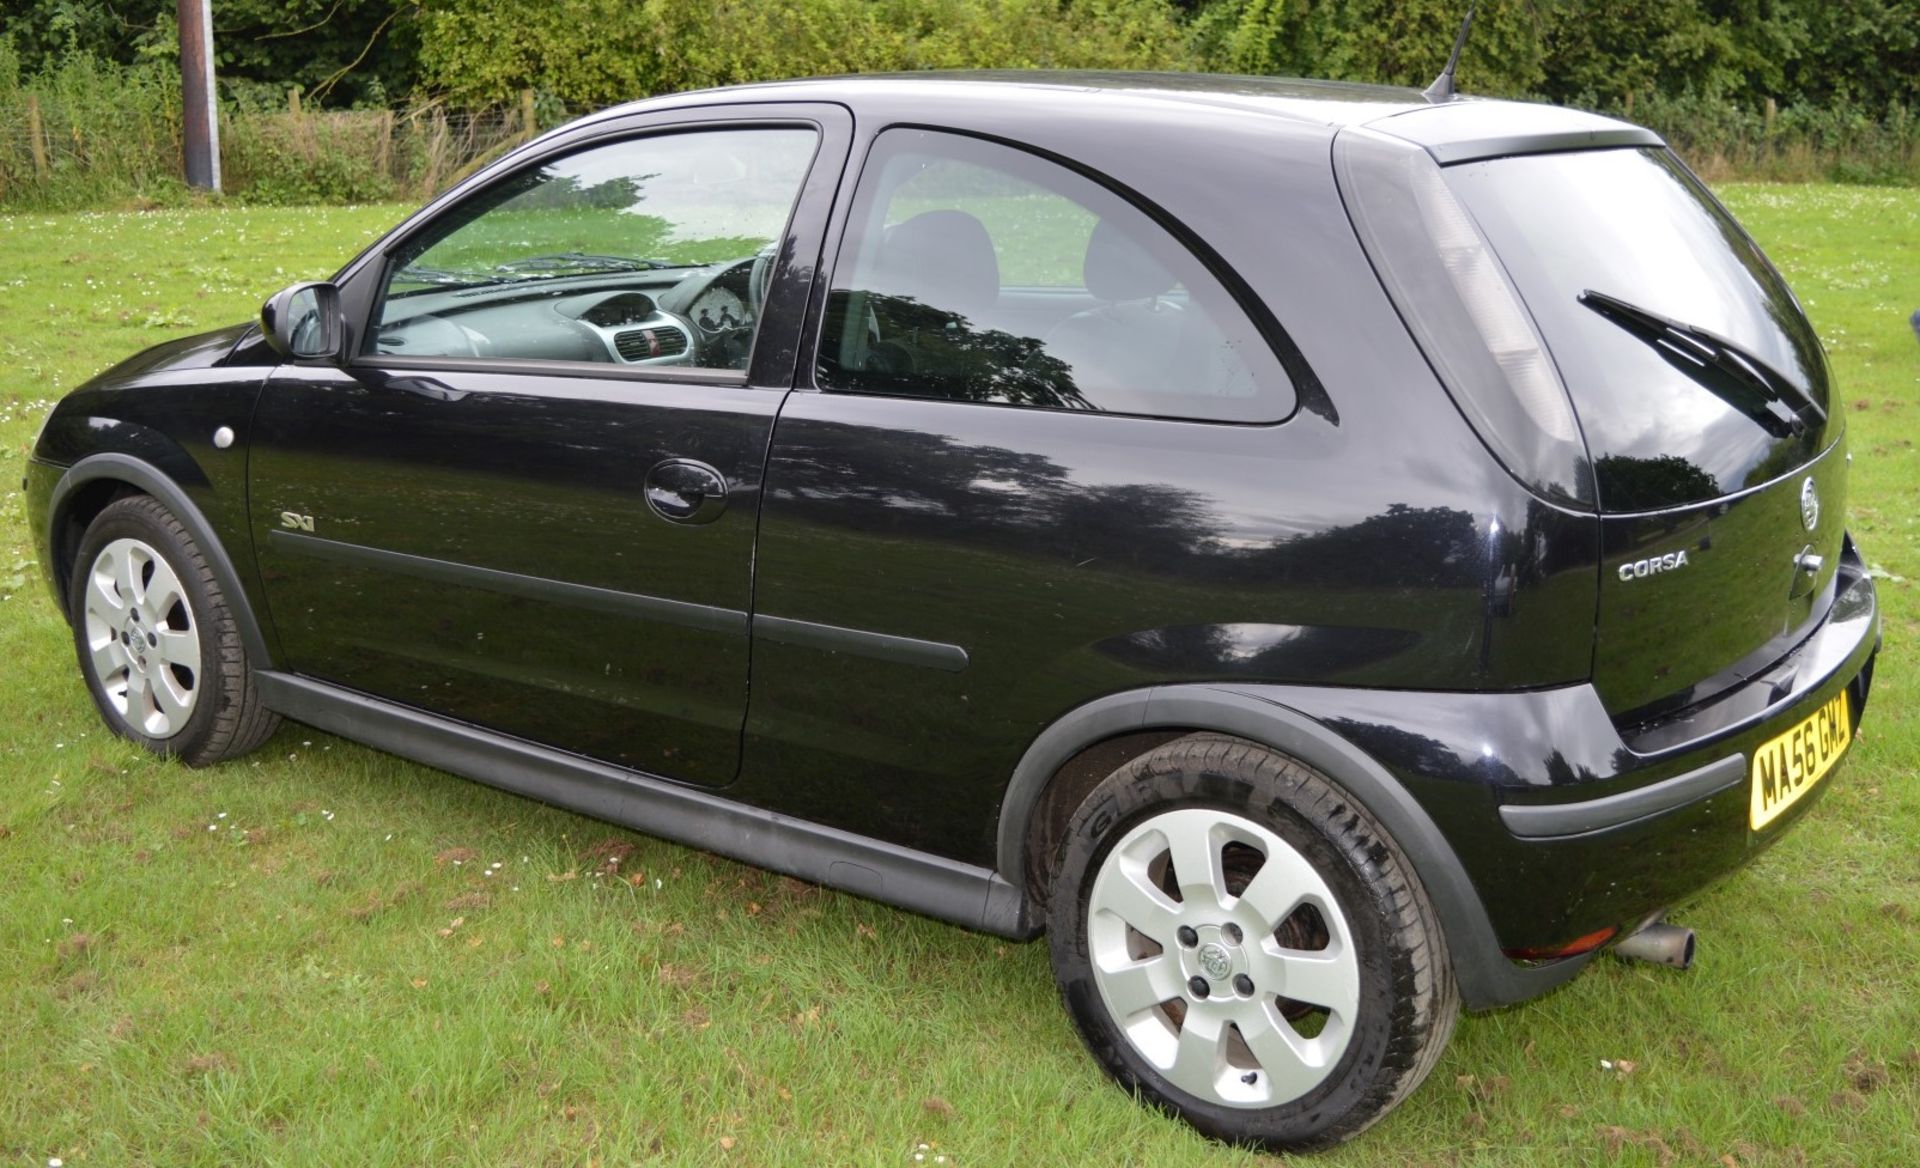 1 x Vauxhall Corsa SXI+ 3 Door Hatchback 1.2 - 2006 56 Plate - 78,000 Miles - MOT June 2018 - Image 6 of 36